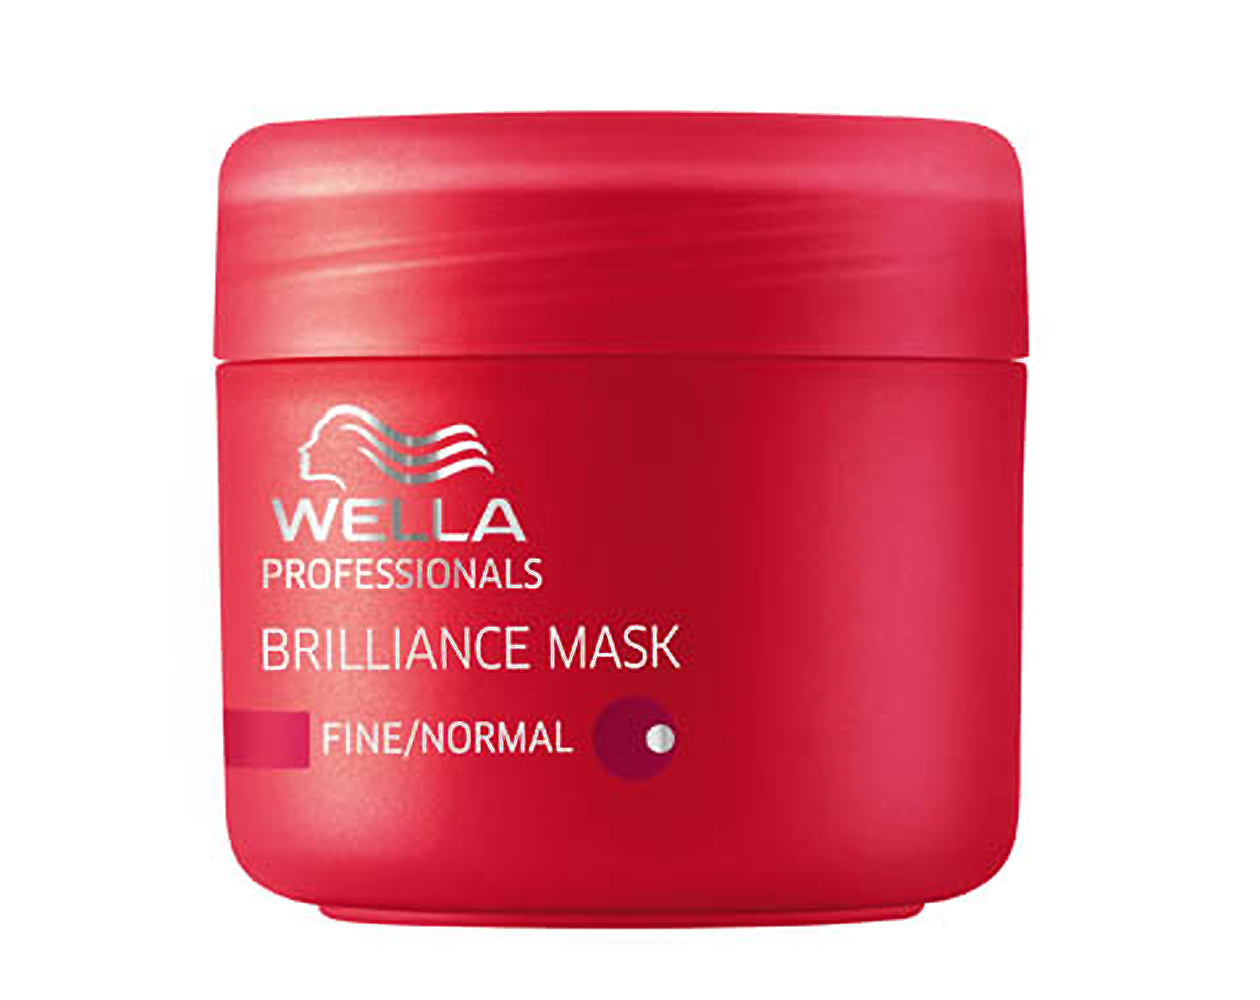 Увлажняющие маски для окрашенных волос. Wella Brilliance маска 150 ml. Велла брилианс для окрашенных волос маска. Wella Invigo Brilliance Fine Mask. Wella маска красная.